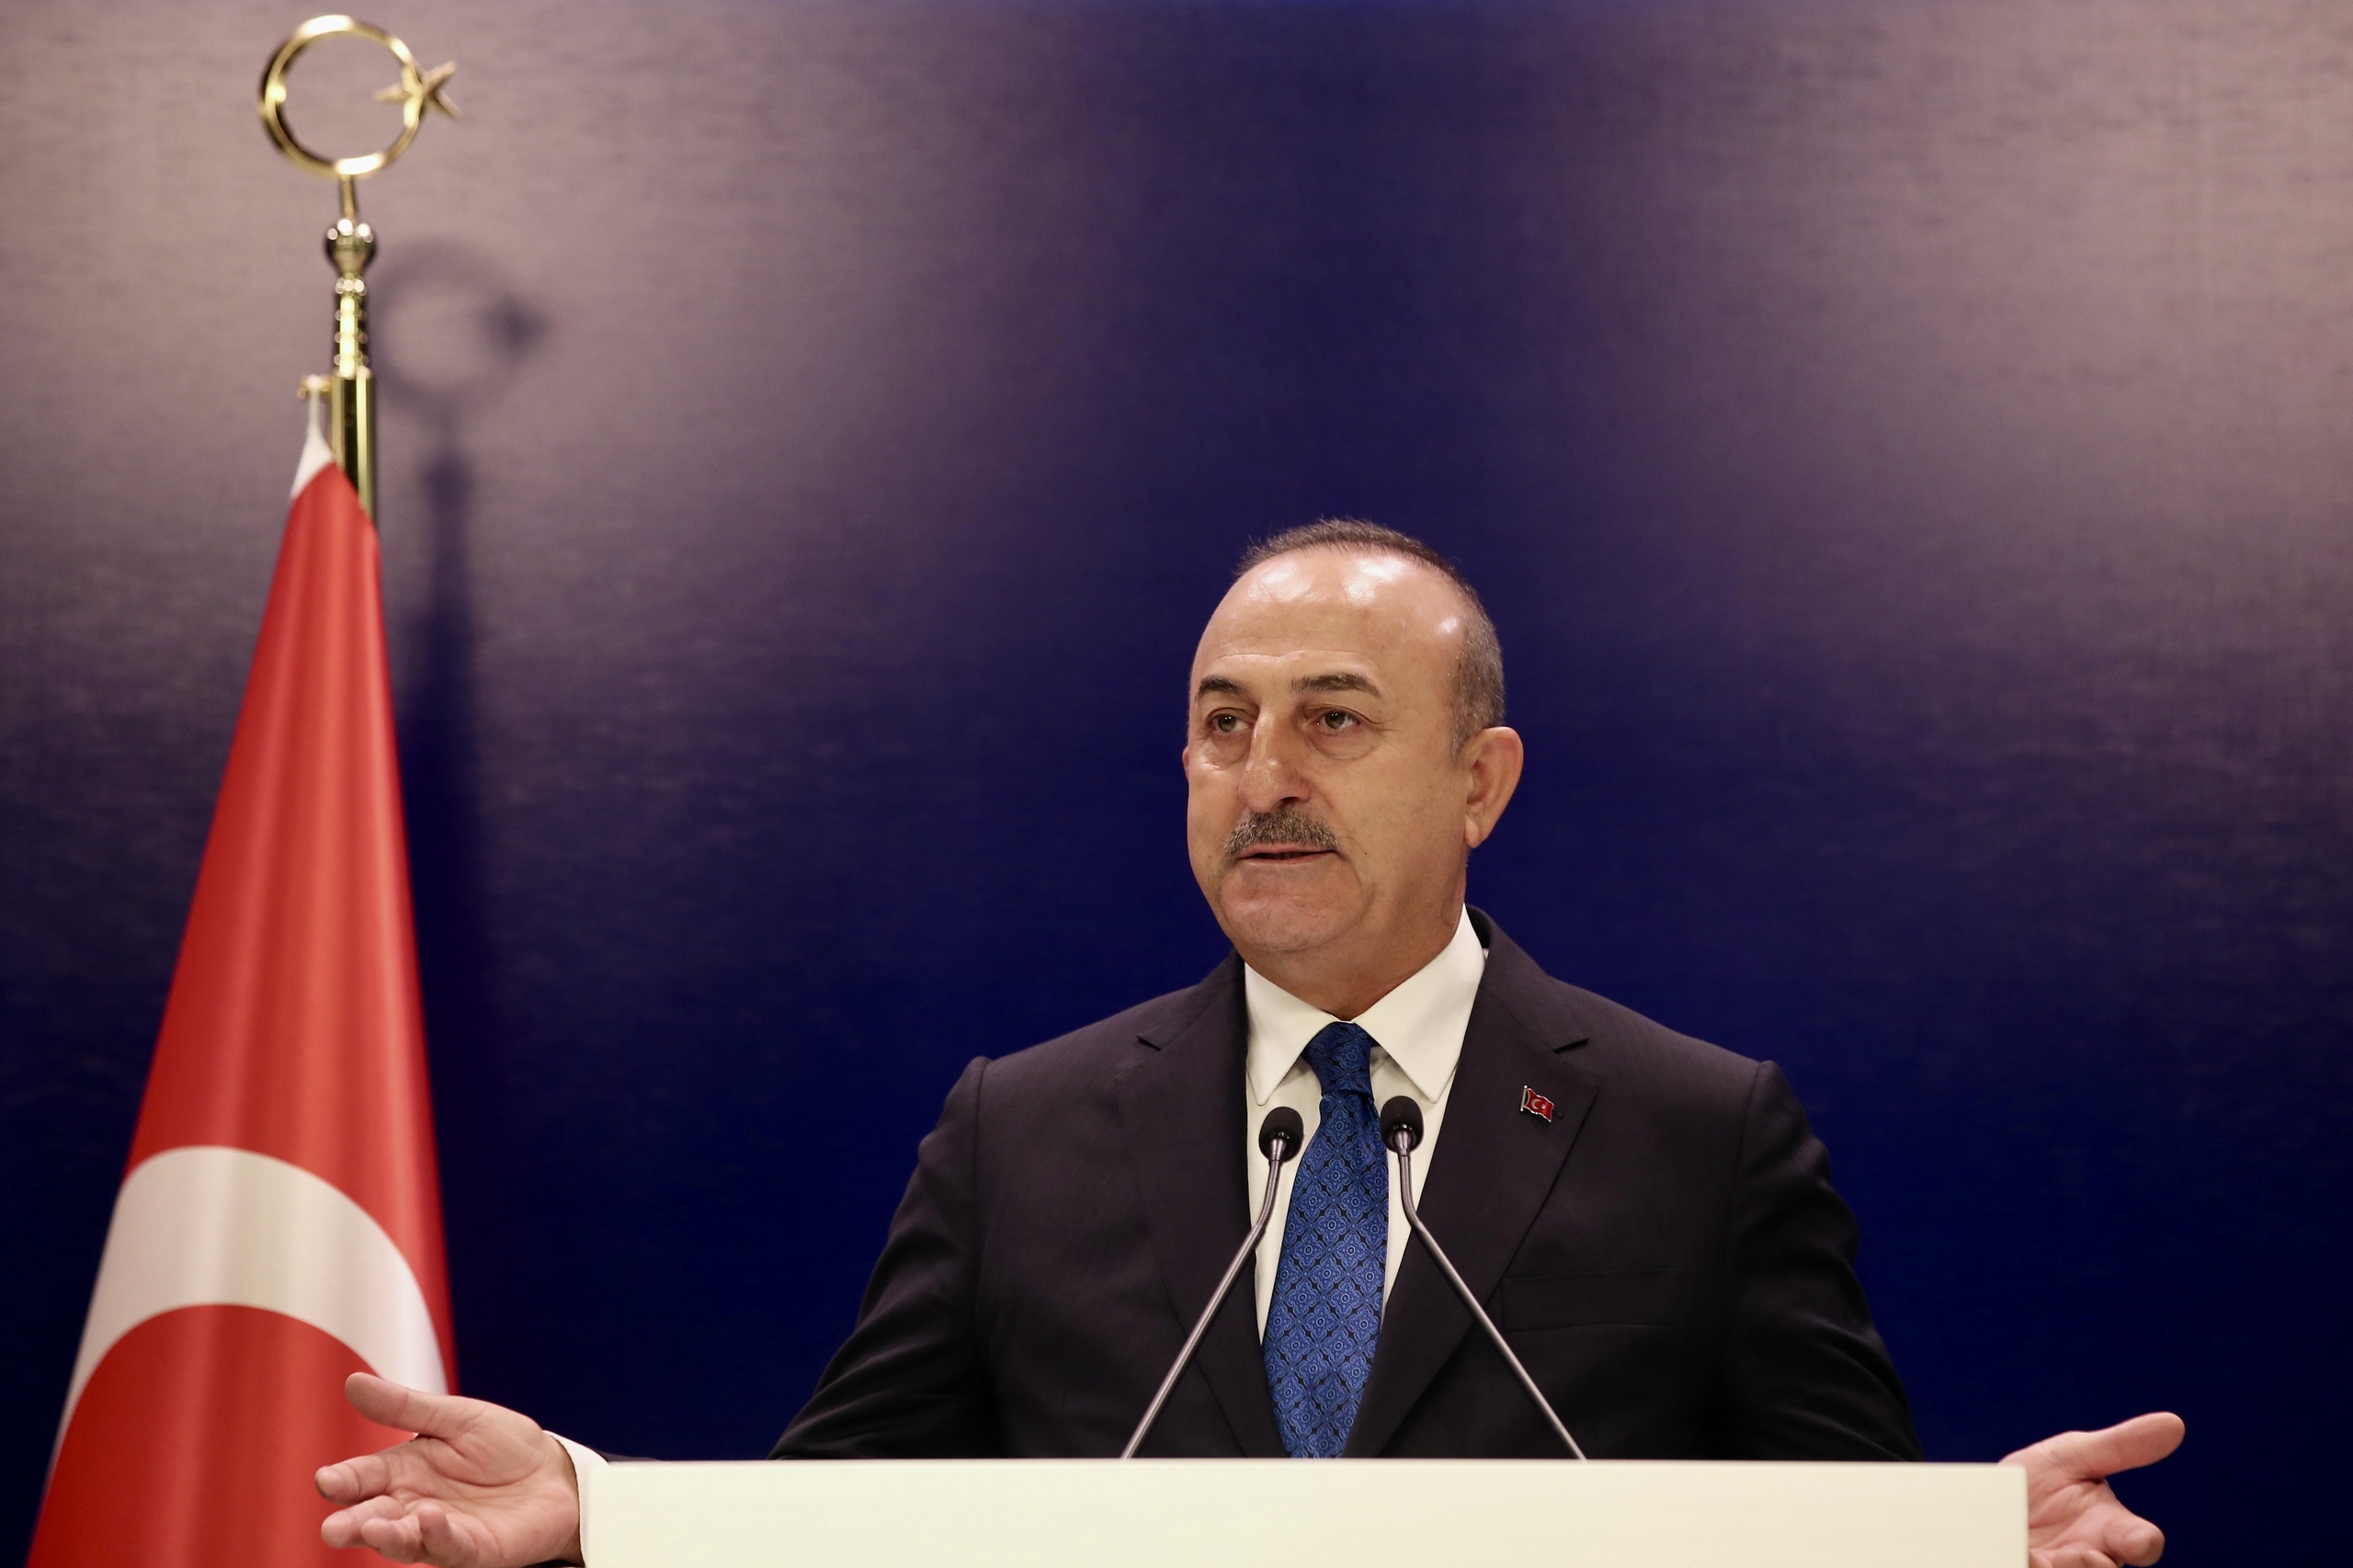 De Turkse minister van Buitenlandse Zaken Mevlut Cavusoglu zegt dat zijn land ziet hoe 'een land opstaat en Saoedi-Arabië bedreigt', verwijzend naar de VS, die wil dat de Saoedies de olieproductie juist opvoeren, in plaats van verlagen om zo de prijs te verhogen. 